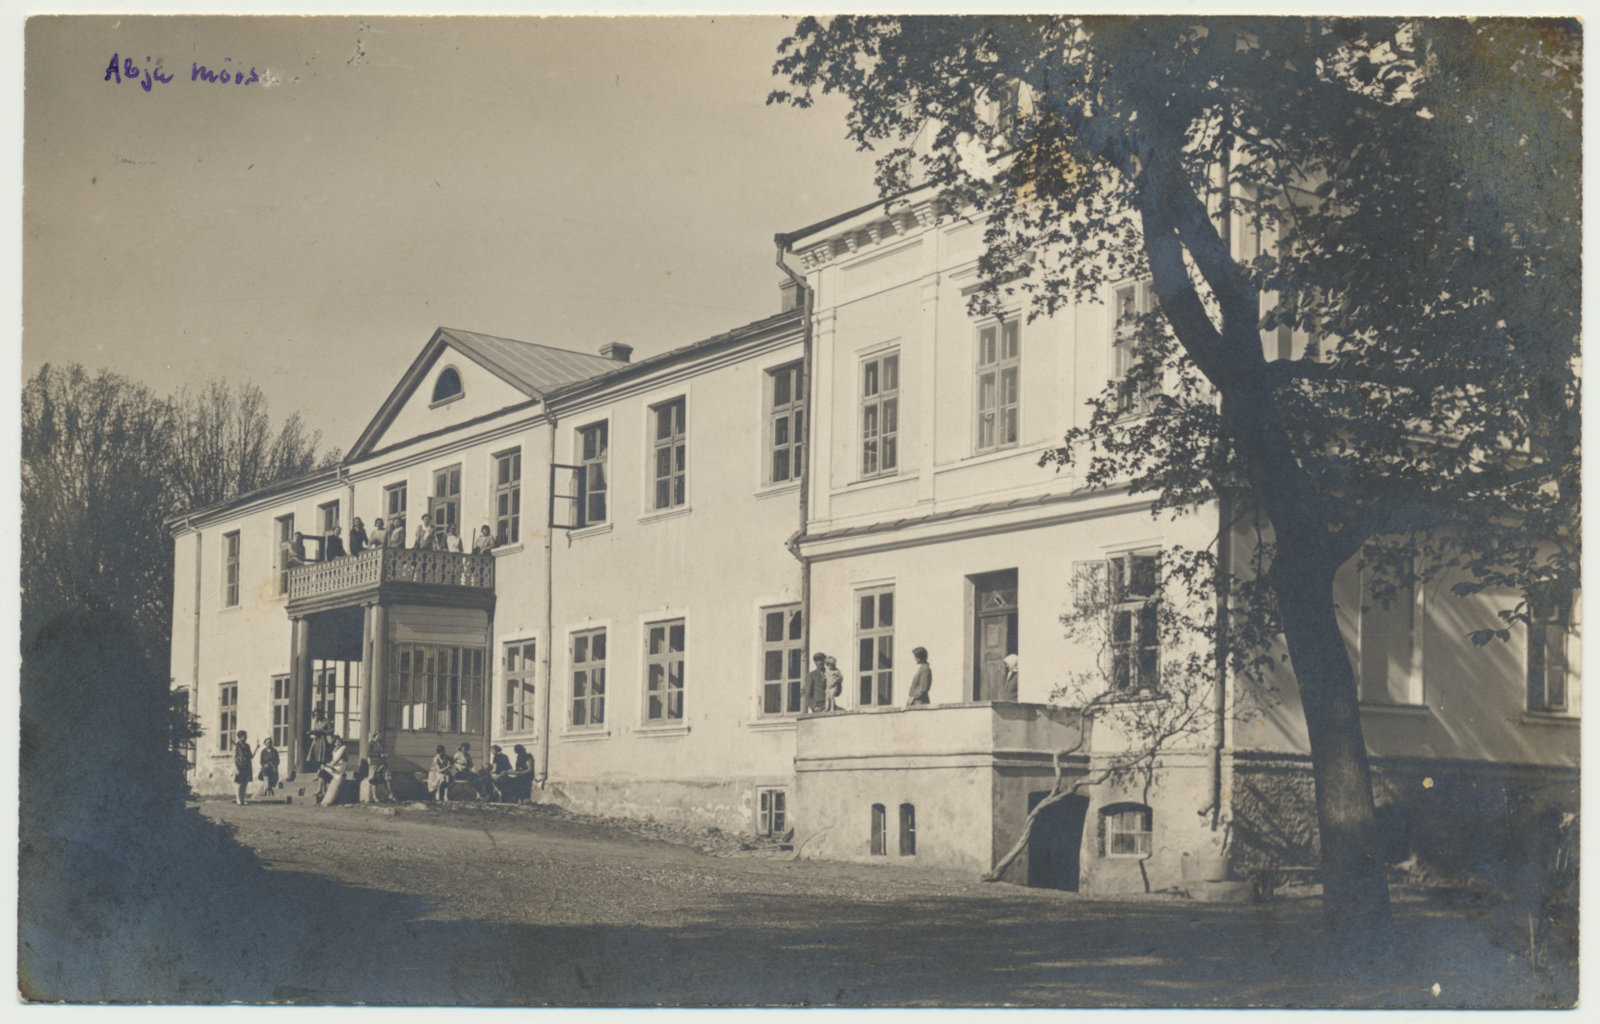 foto, Viljandimaa, Abja mõisa peahoone, kool, 1925